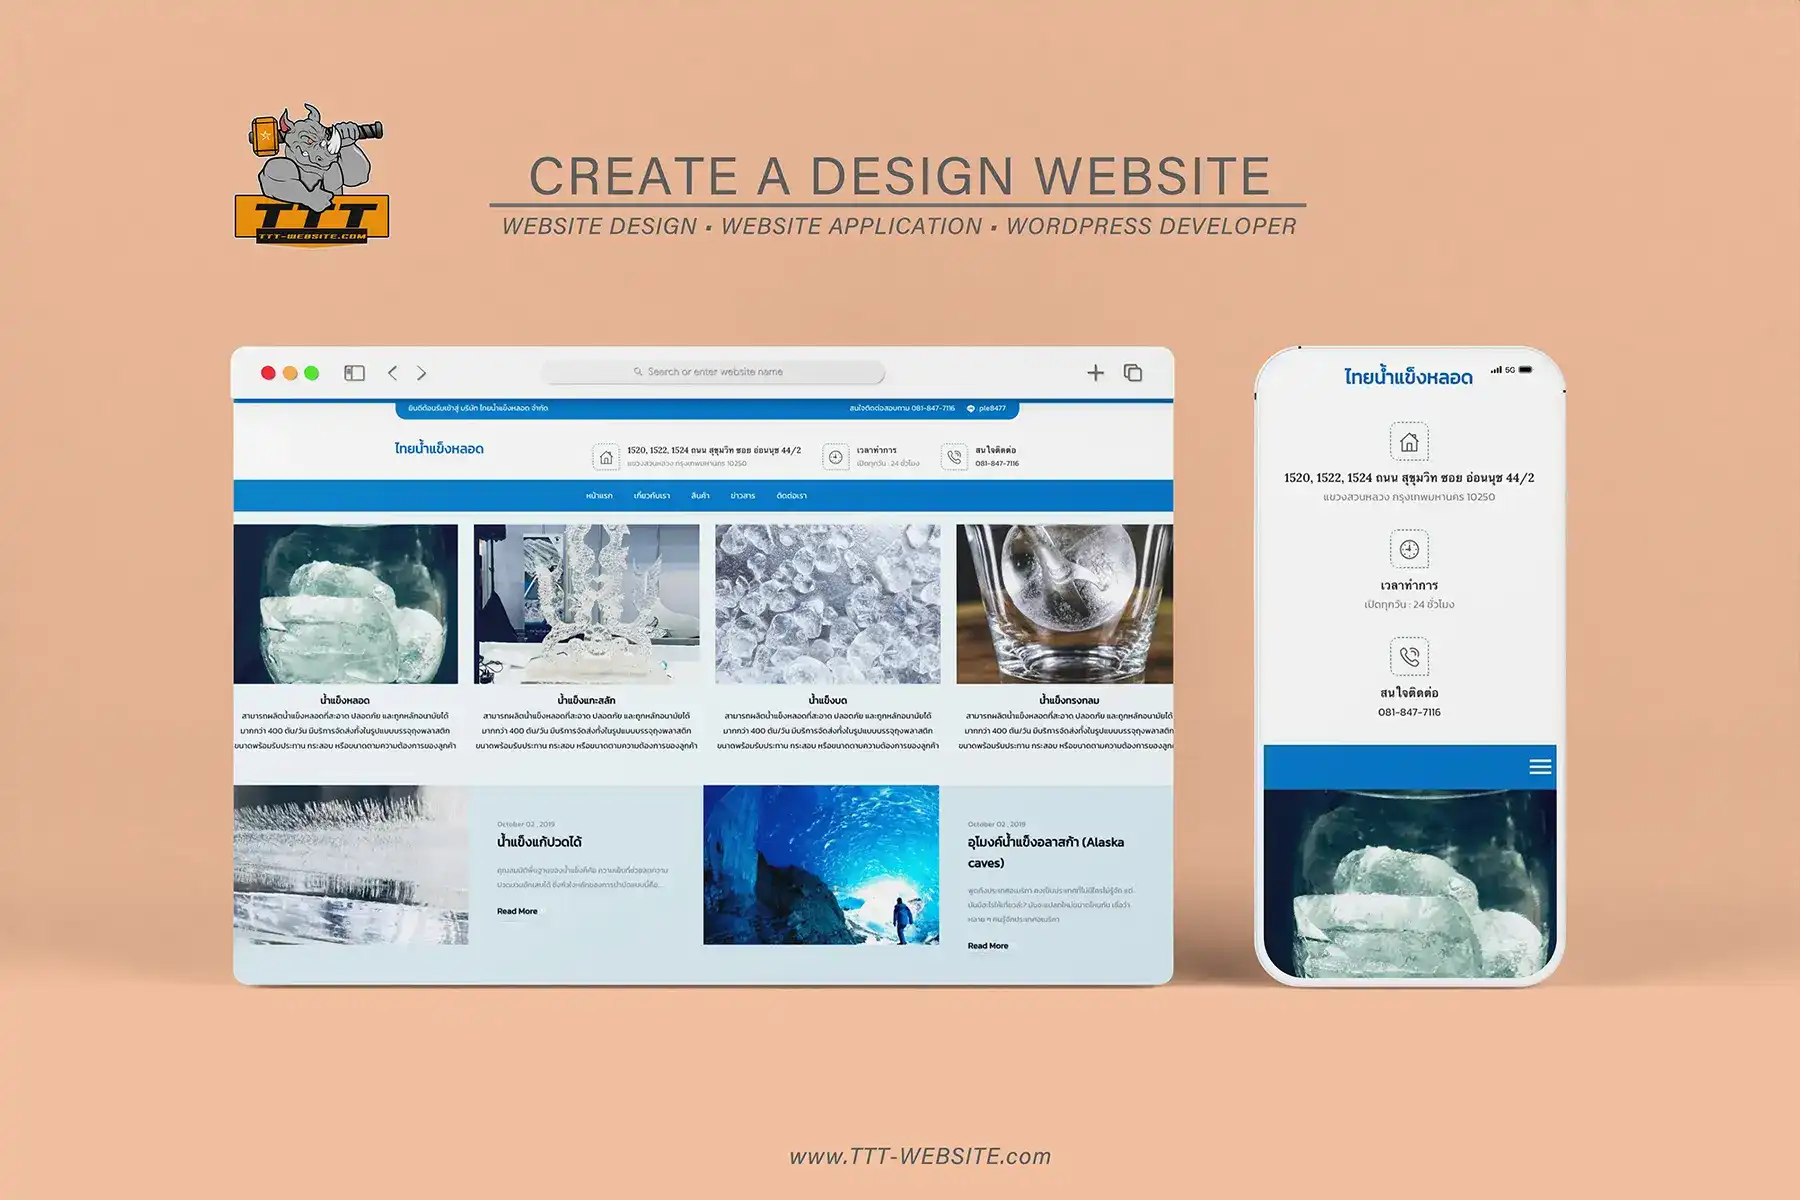 รับทำเว็บไซต์ รับออกแบบเว็บไซต์ เว็บไซต์สำเร็จรูป ตัวอย่างเว็บไซต์ - ธุรกิจโรงงานน้ำแข็งขนาดใหญ่ TTT-WEBSITE